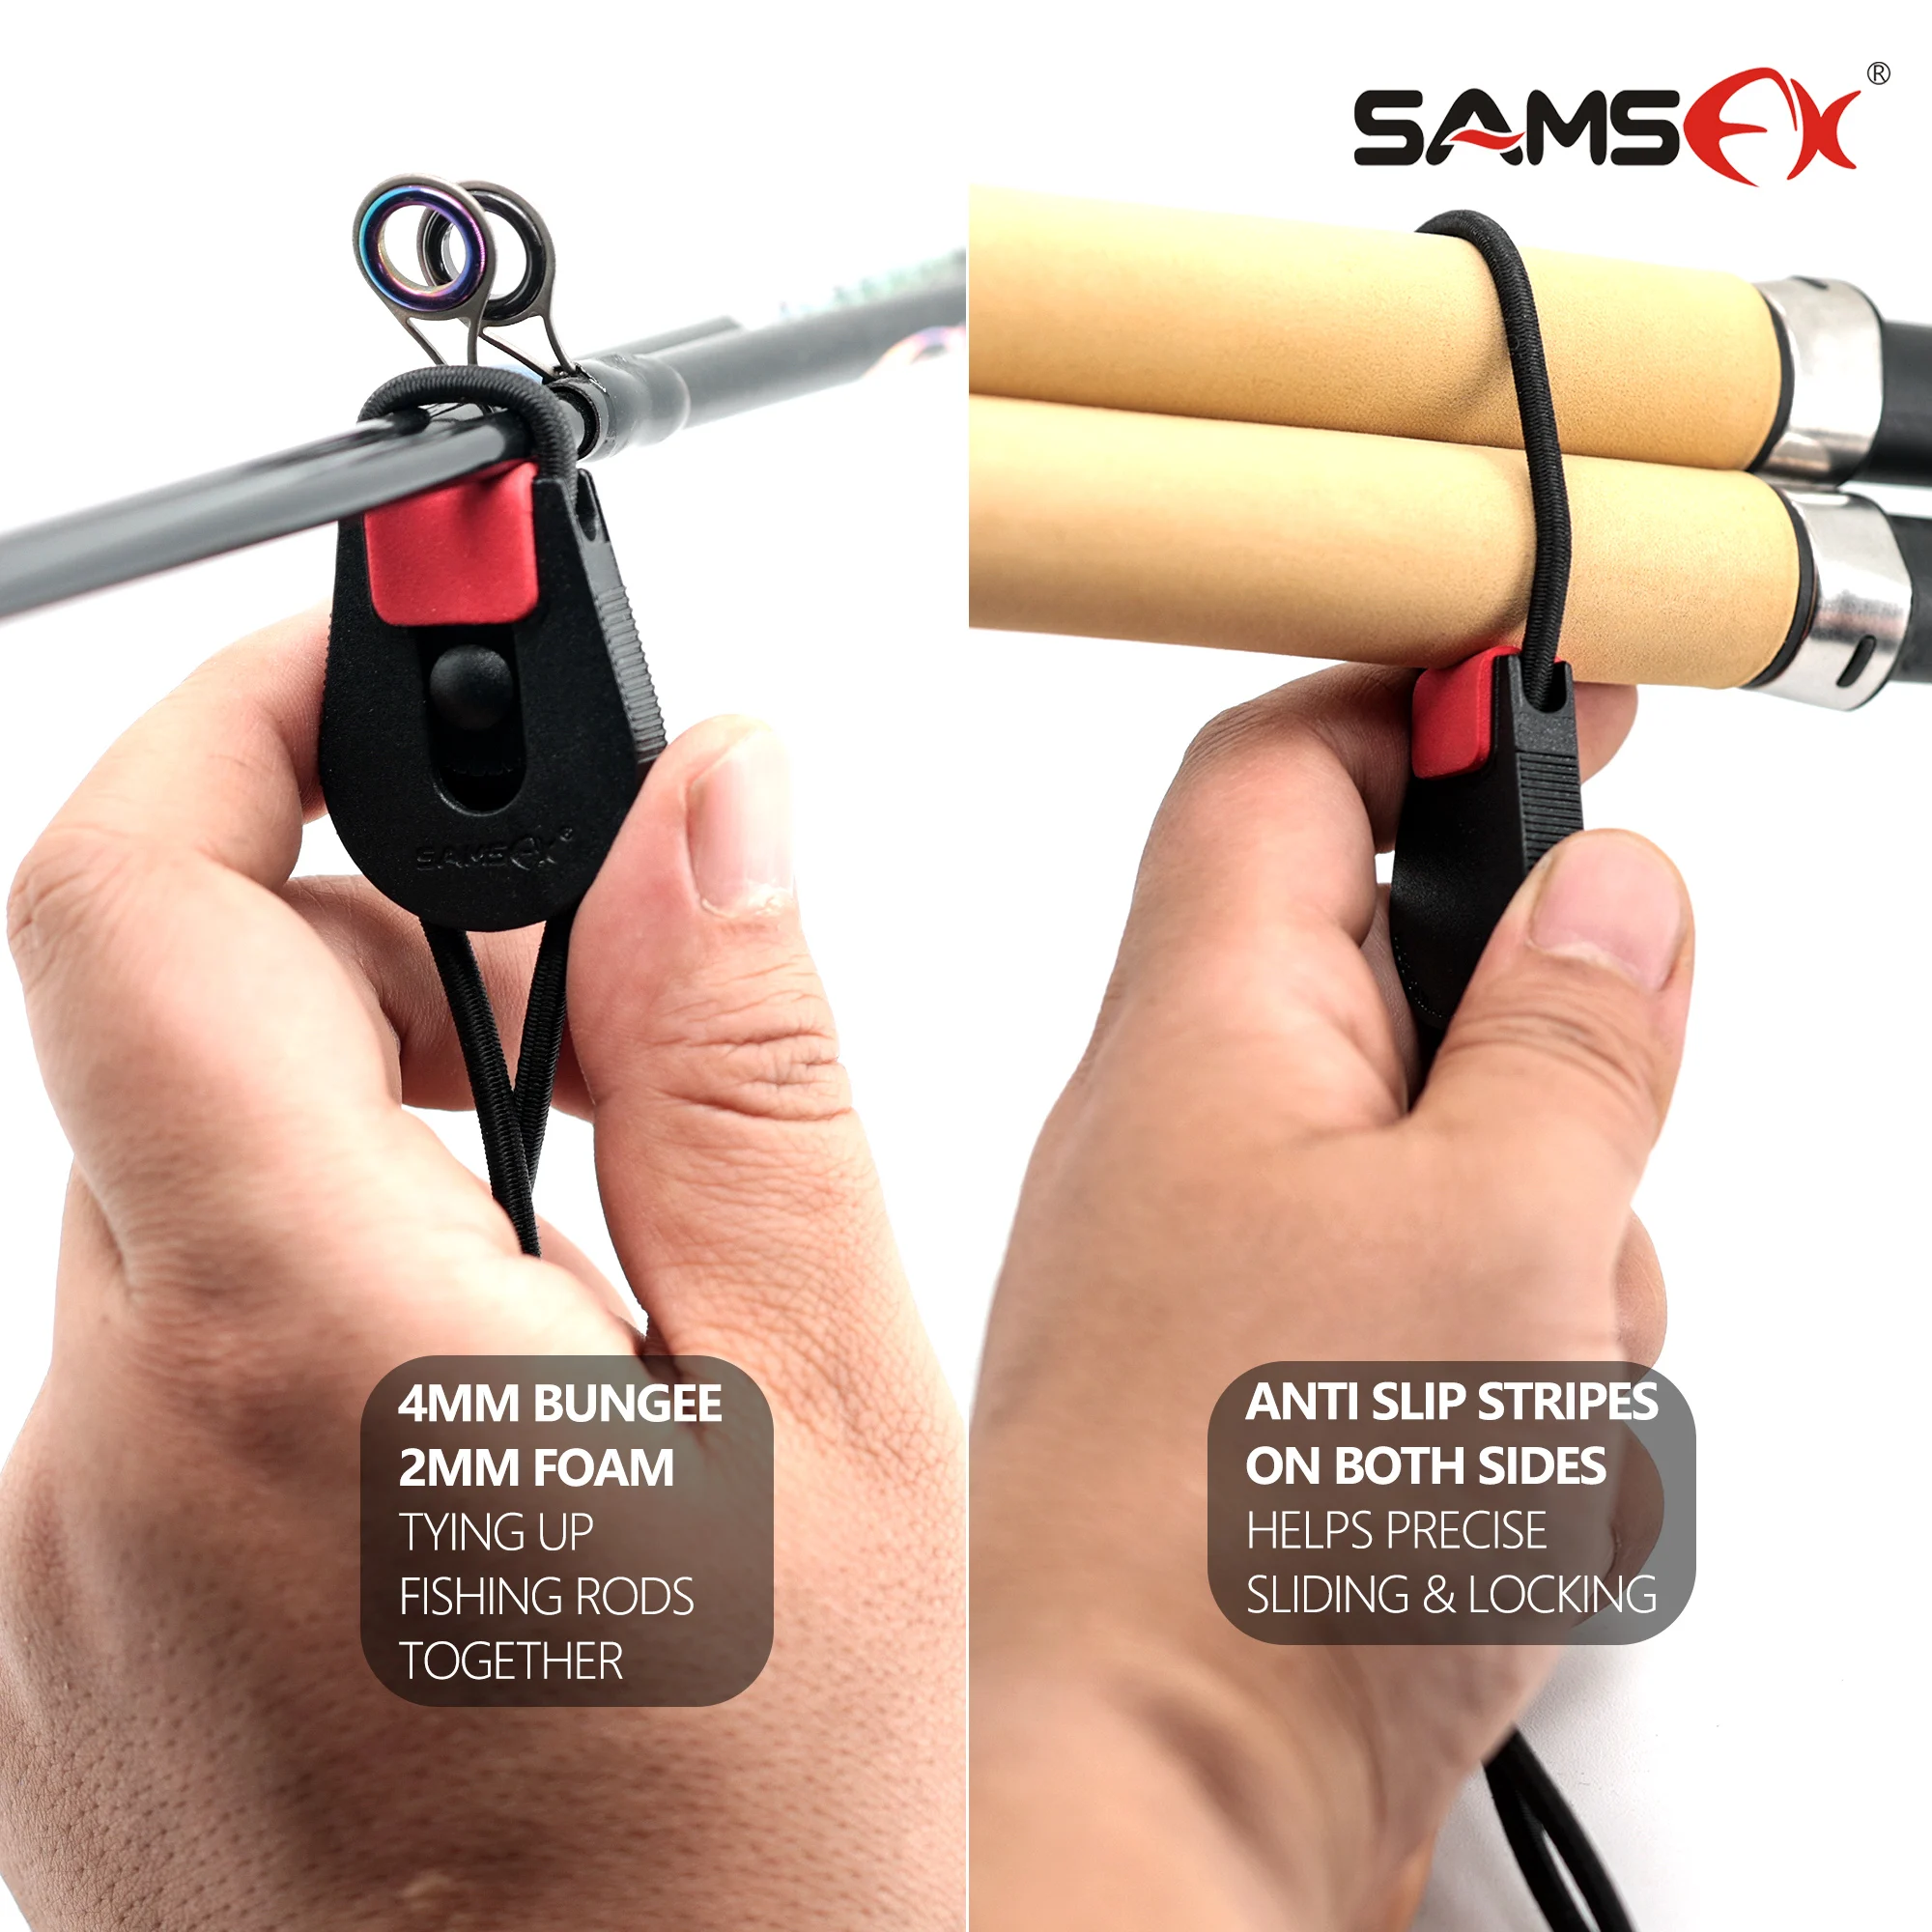 https://ae01.alicdn.com/kf/S5bf6360c4d7d413581155ea8adc1b972X/SAMSFX-Fishing-Rod-Holder-Tie-Belt-Wrap-Straps-Suspenders-Fastener-Neoprene-Fishing-Tackle-Tools-Accessories.jpg